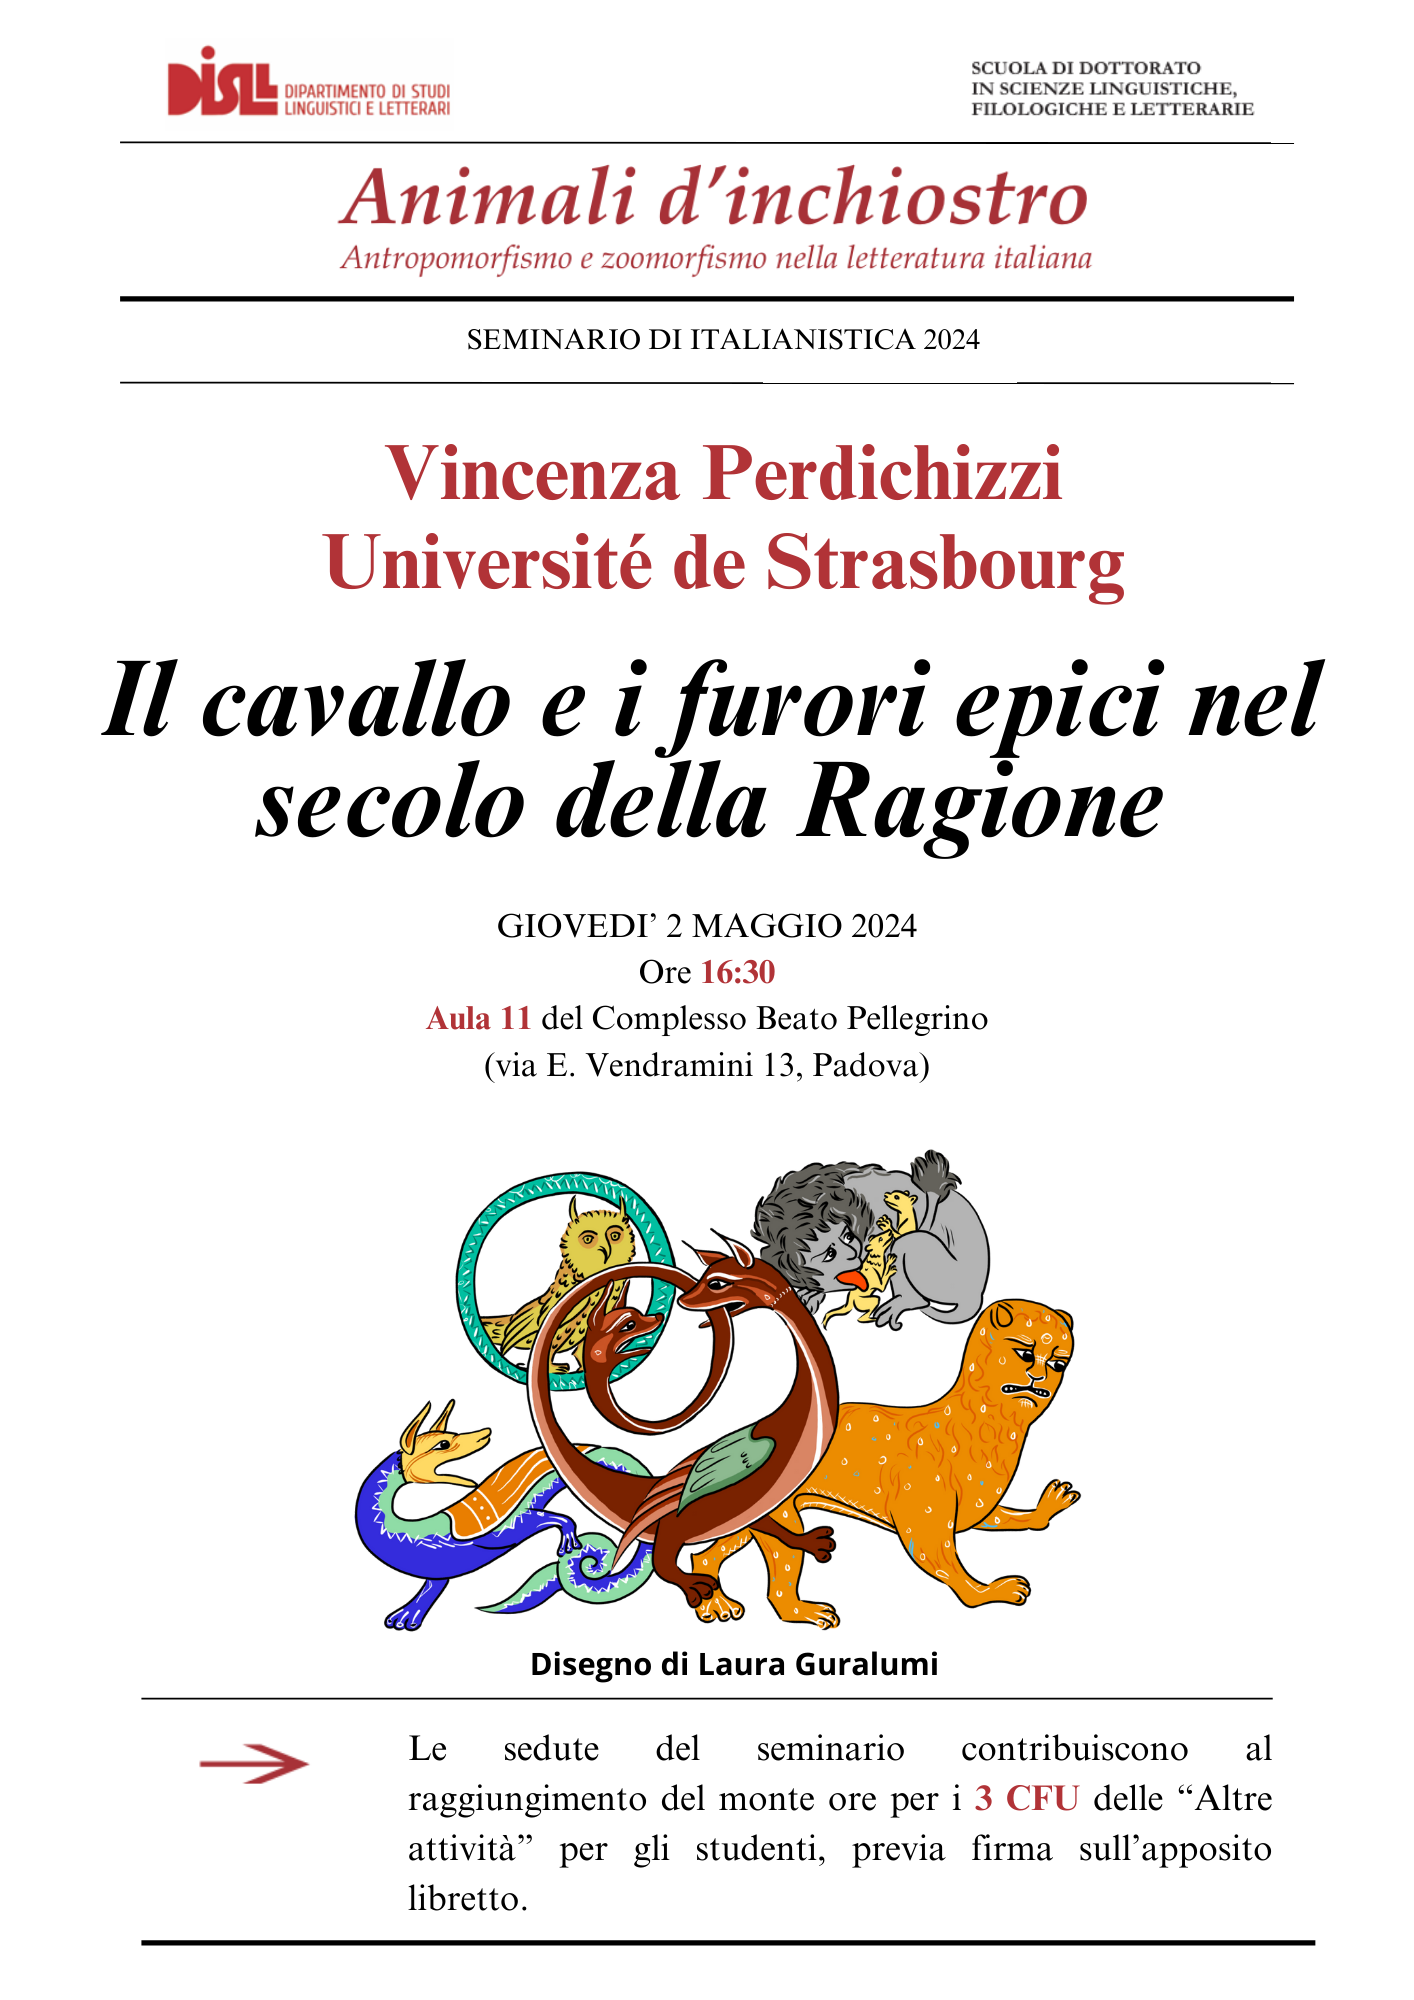 Annexe 02.05.2024 Locandina seminario di italianistica.png